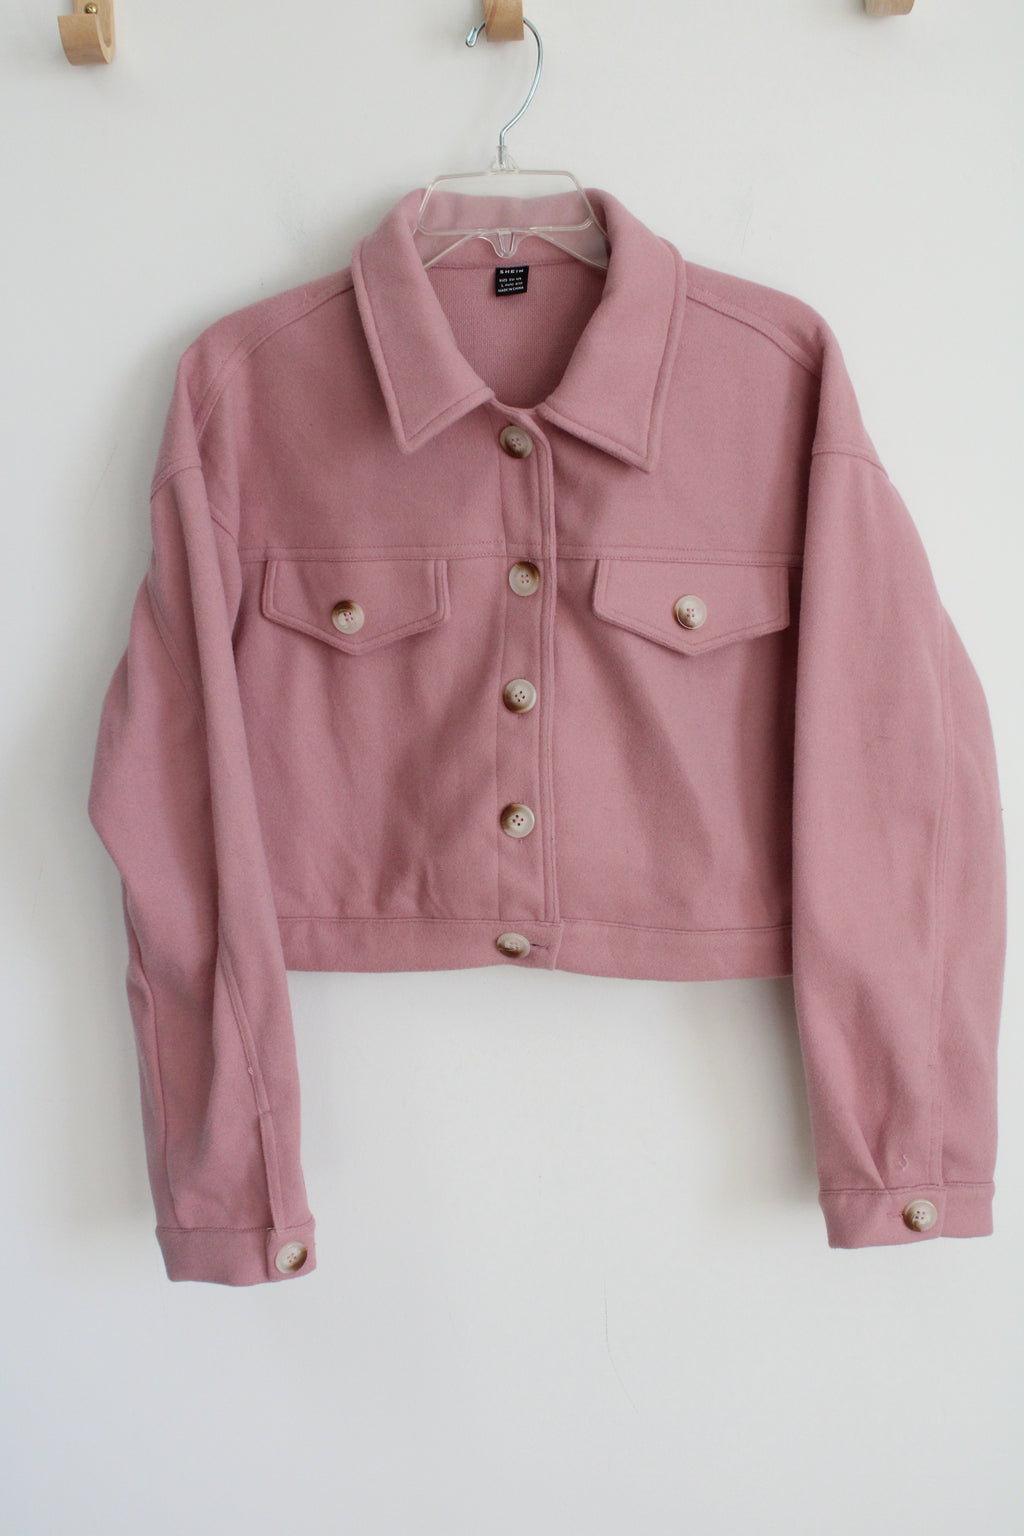 Shein Crop Pink Light Jacket | L